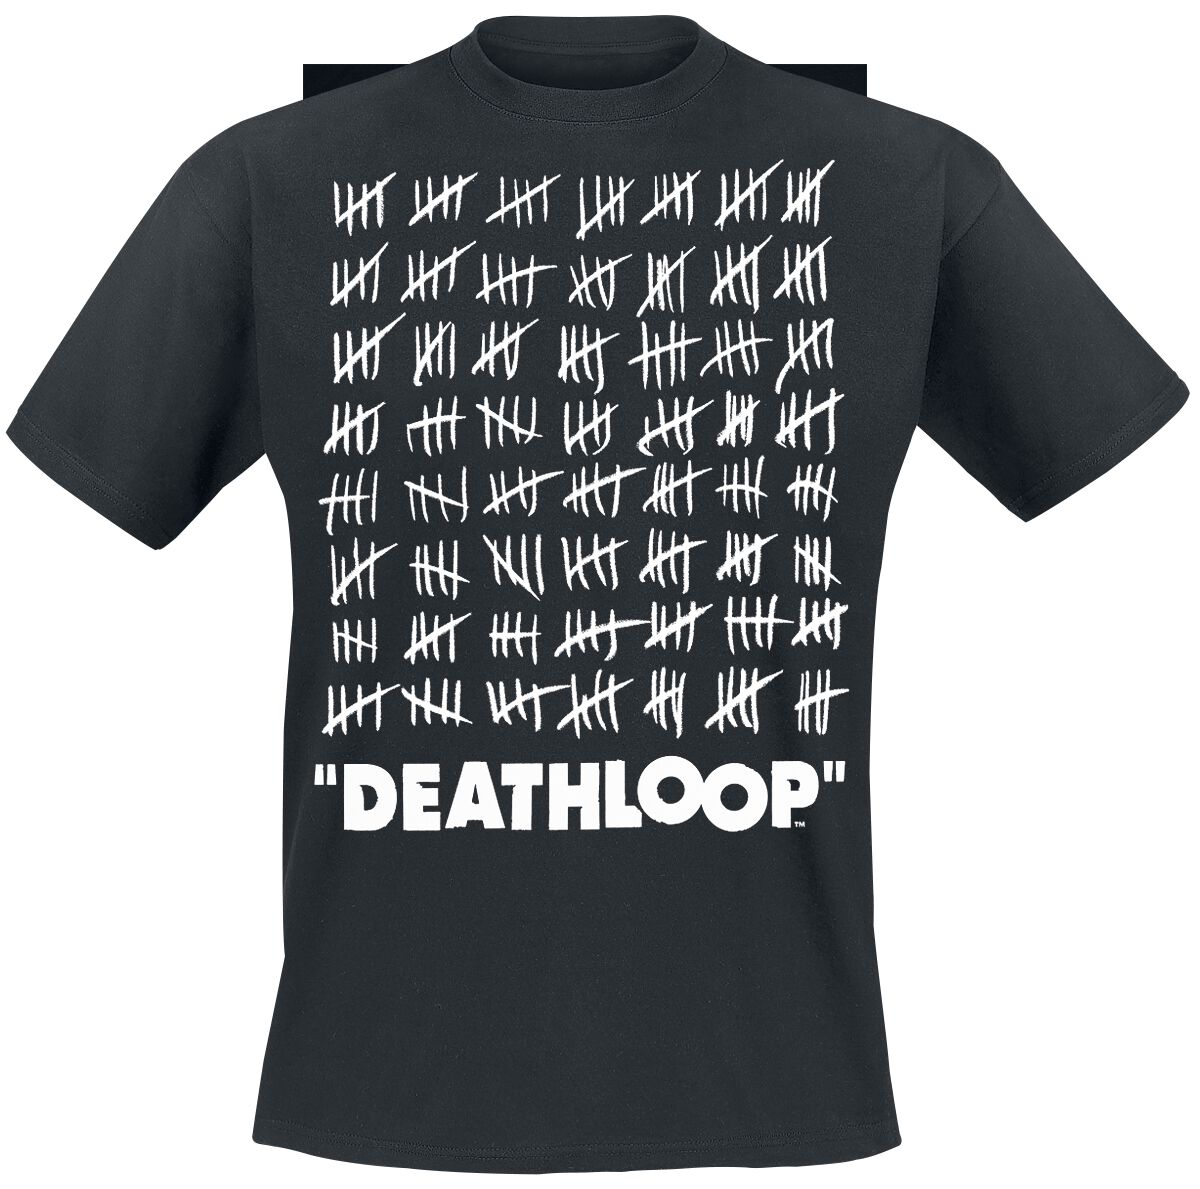 Deathloop Counting in Order T-Shirt black